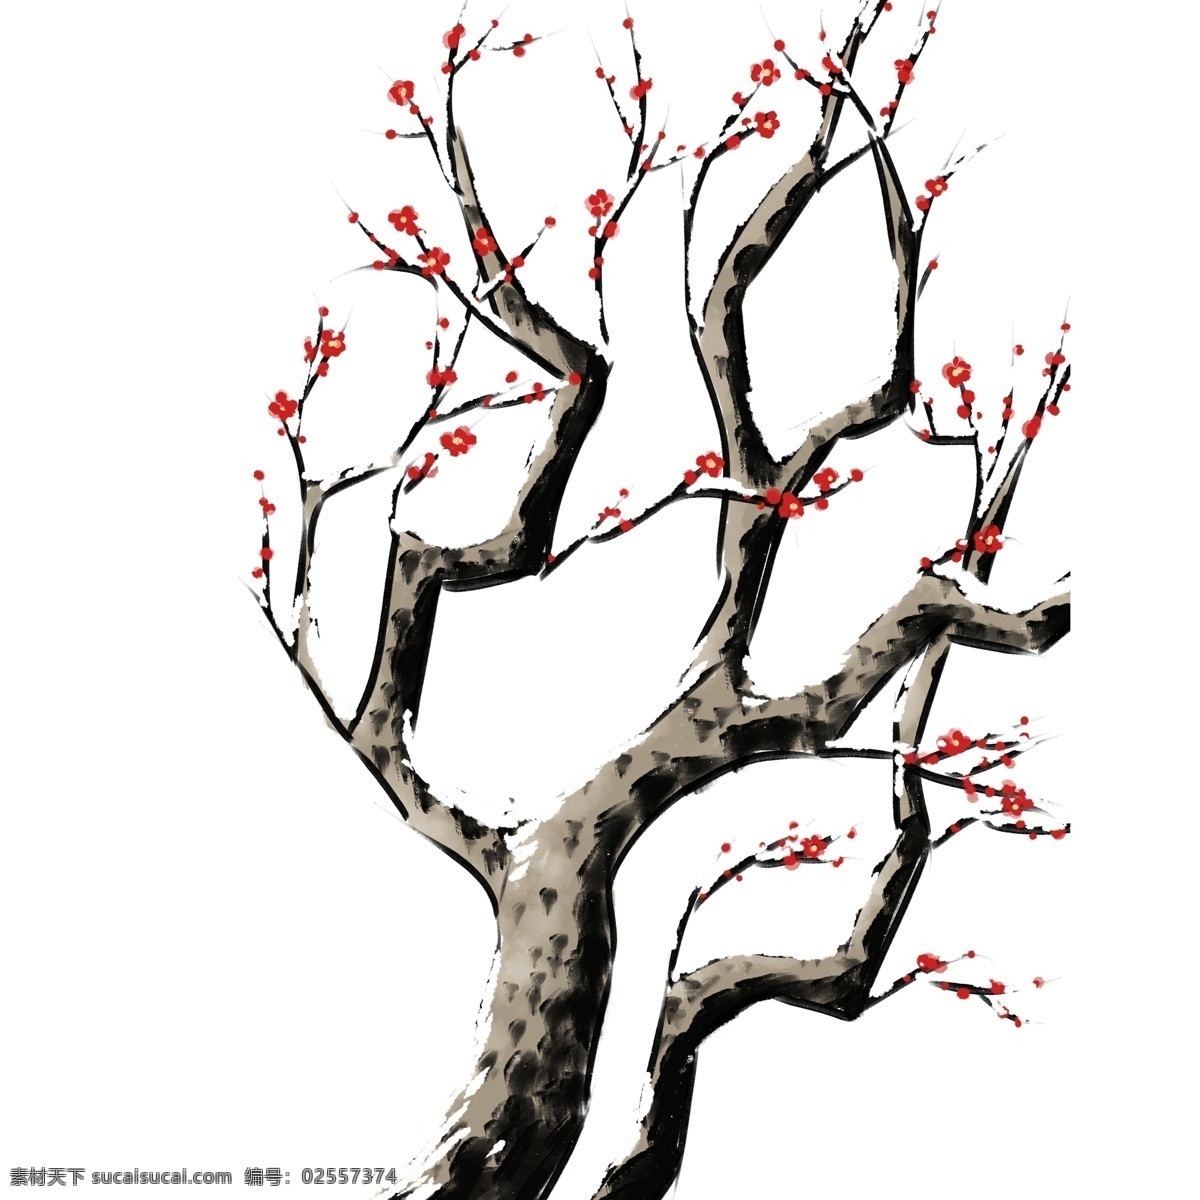 卡通 手绘 红 梅花 植物 花卉 唯美 中国风 冬季 古风 优美 梅花树 红梅